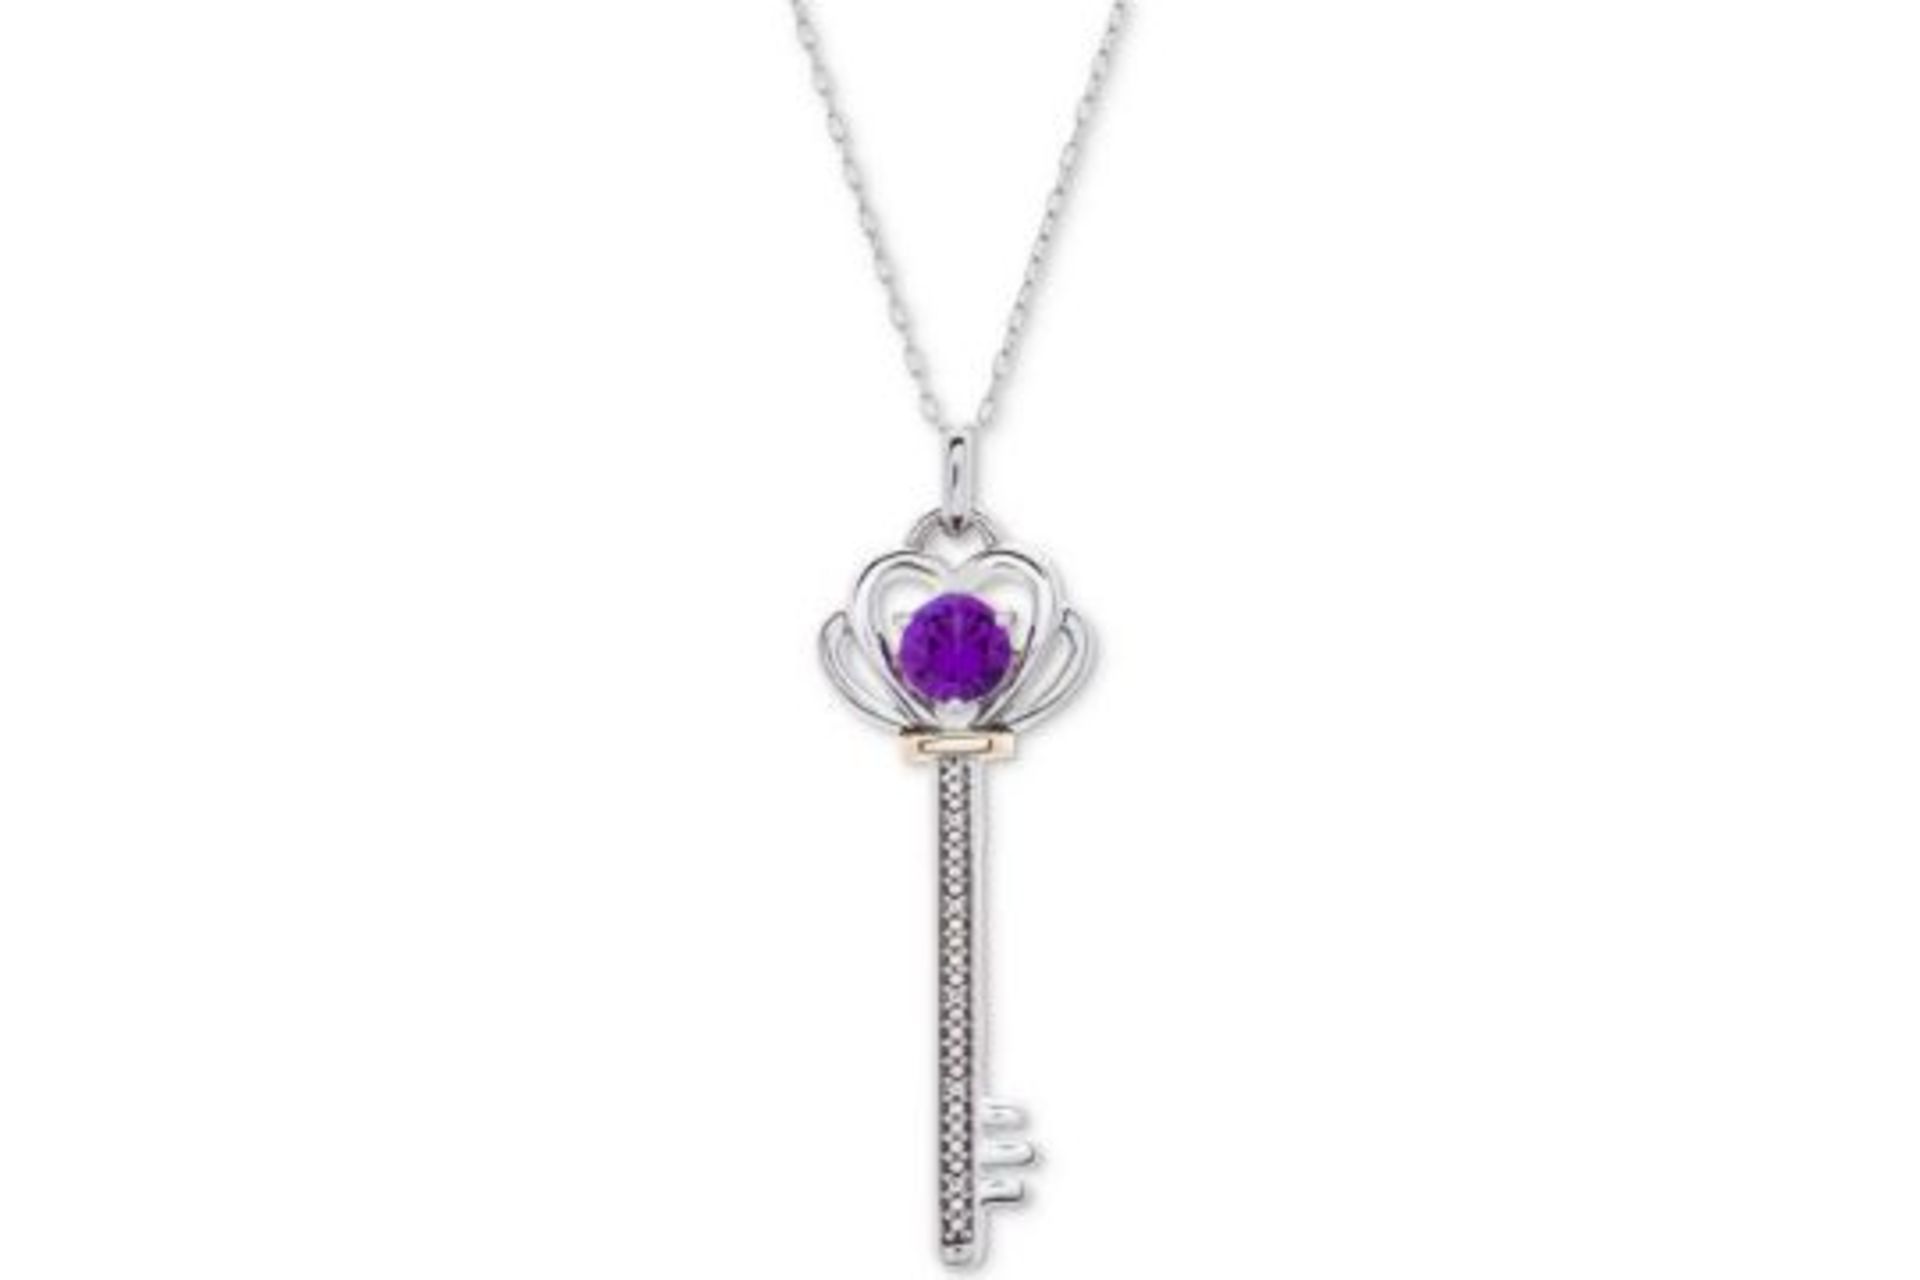 10 x Gem Stone King 925 Sterling Silver Purple Amethyst Heart Key Pendant Necklace RRP £19.99 ea